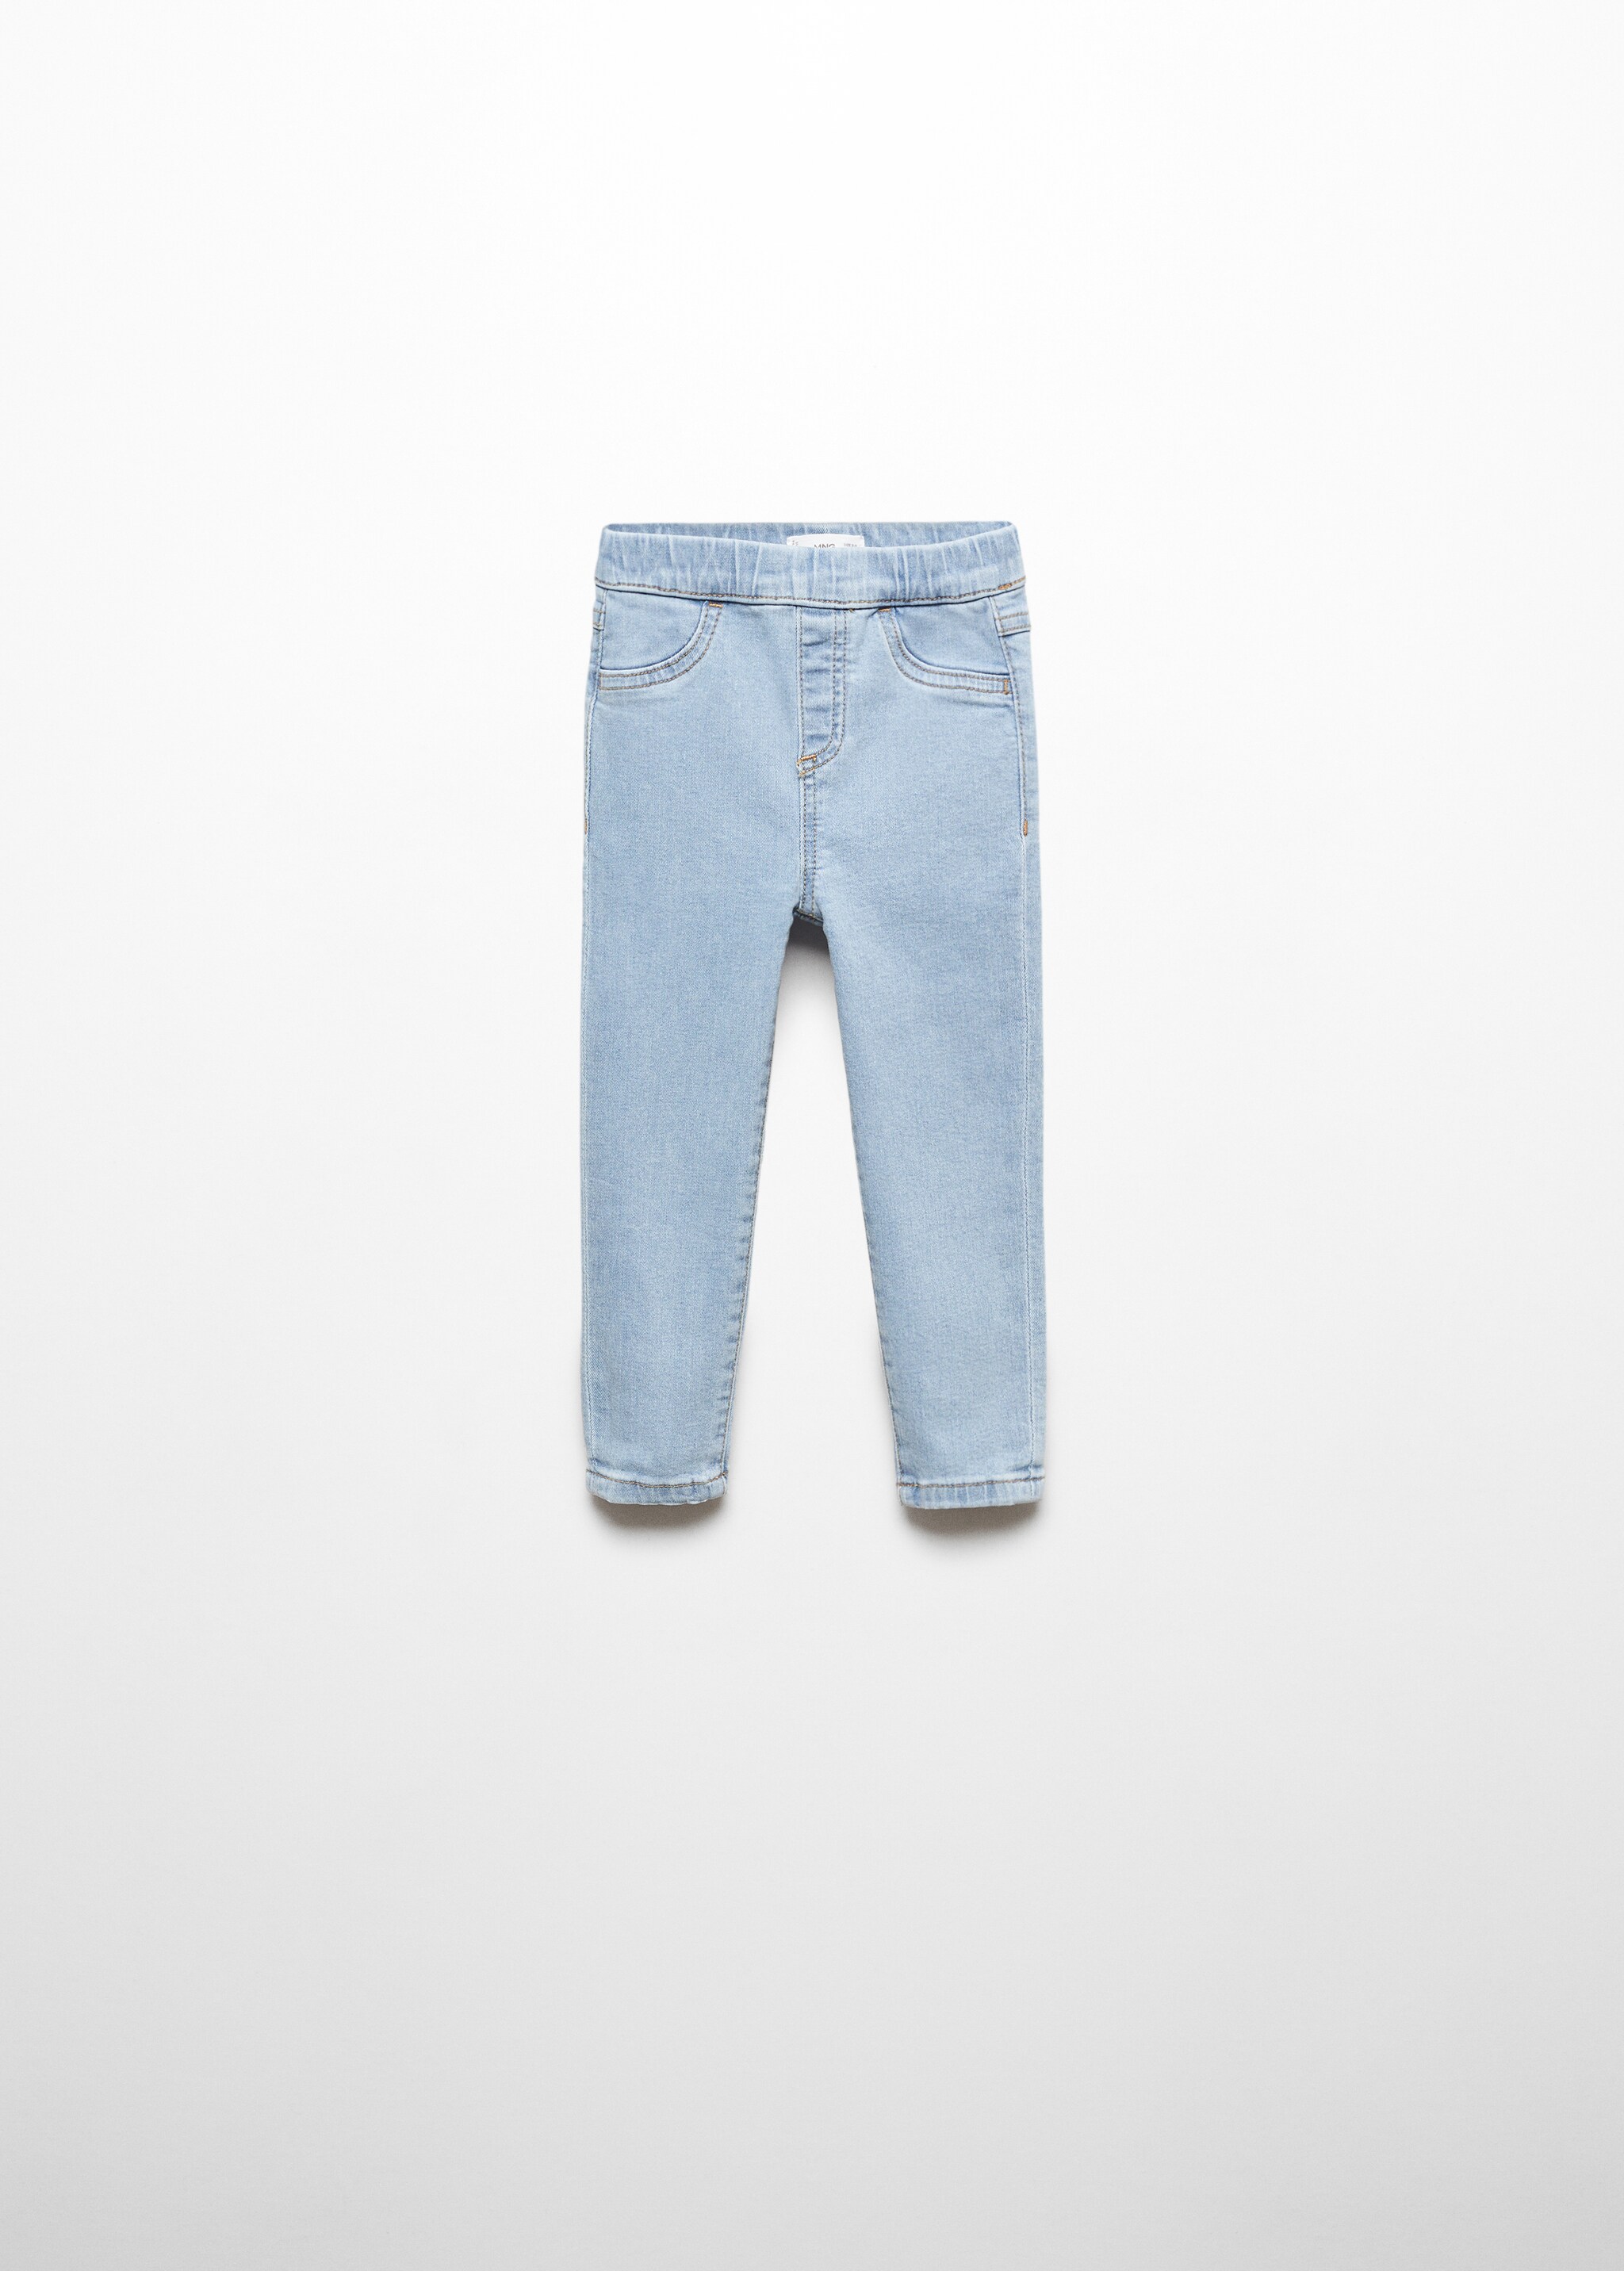 Jeans cintura elástica - Artigo sem modelo